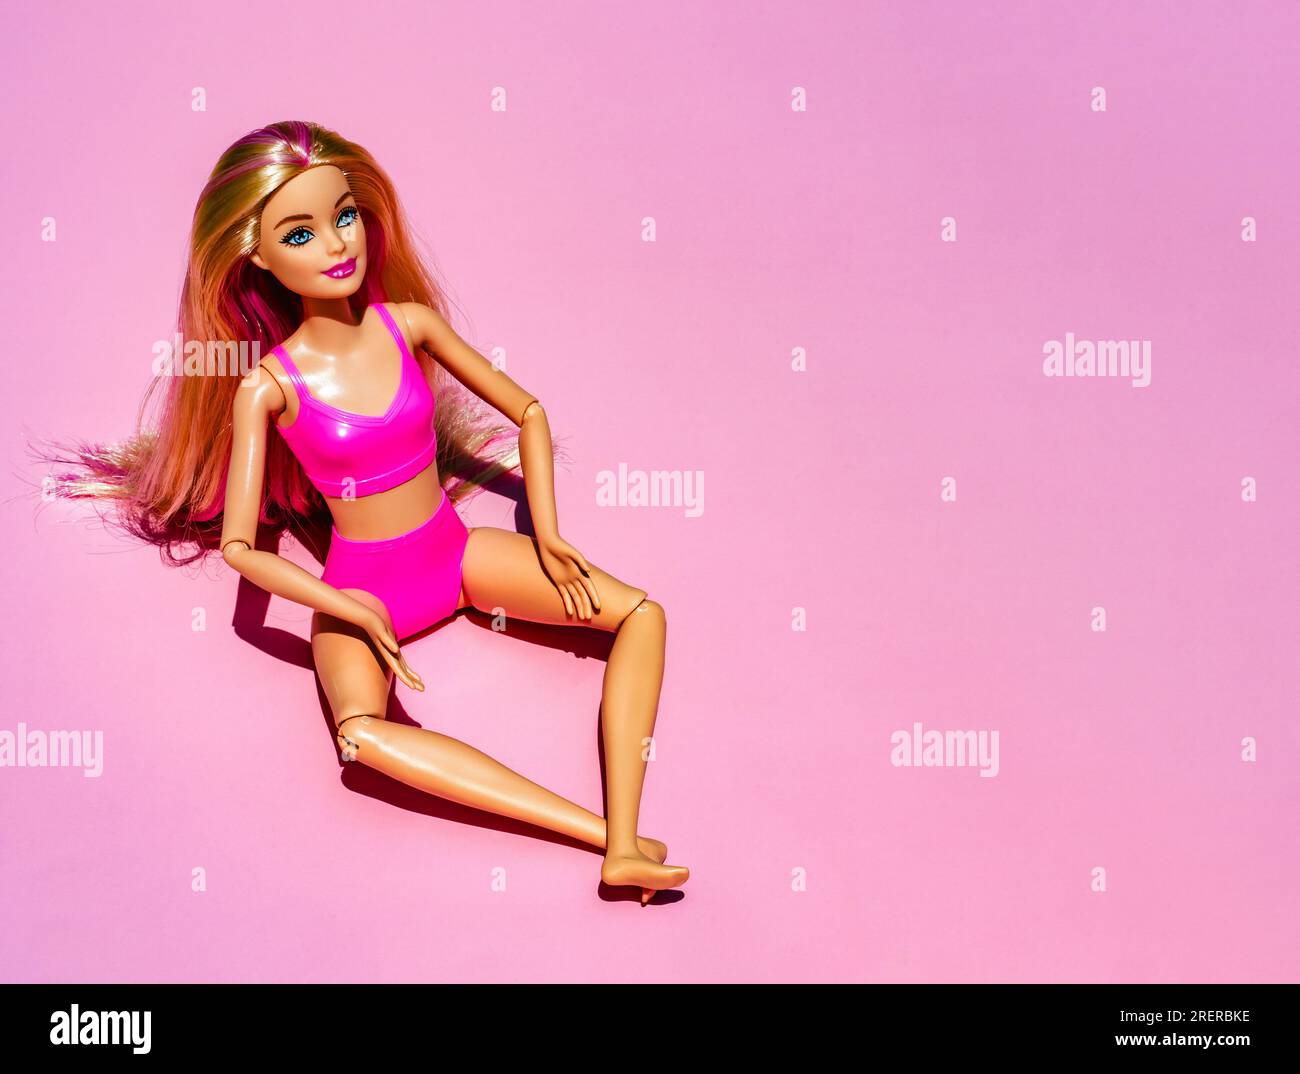 Nizza, Frankreich - 29. JULI 2023: Blonde Puppe mit pinkfarbenem Badeanzug und Accessoires auf pinkfarbenem Hintergrund. Trendige, moderne Barbie mit flachen Füßen. Hohe Qualität Stockfoto